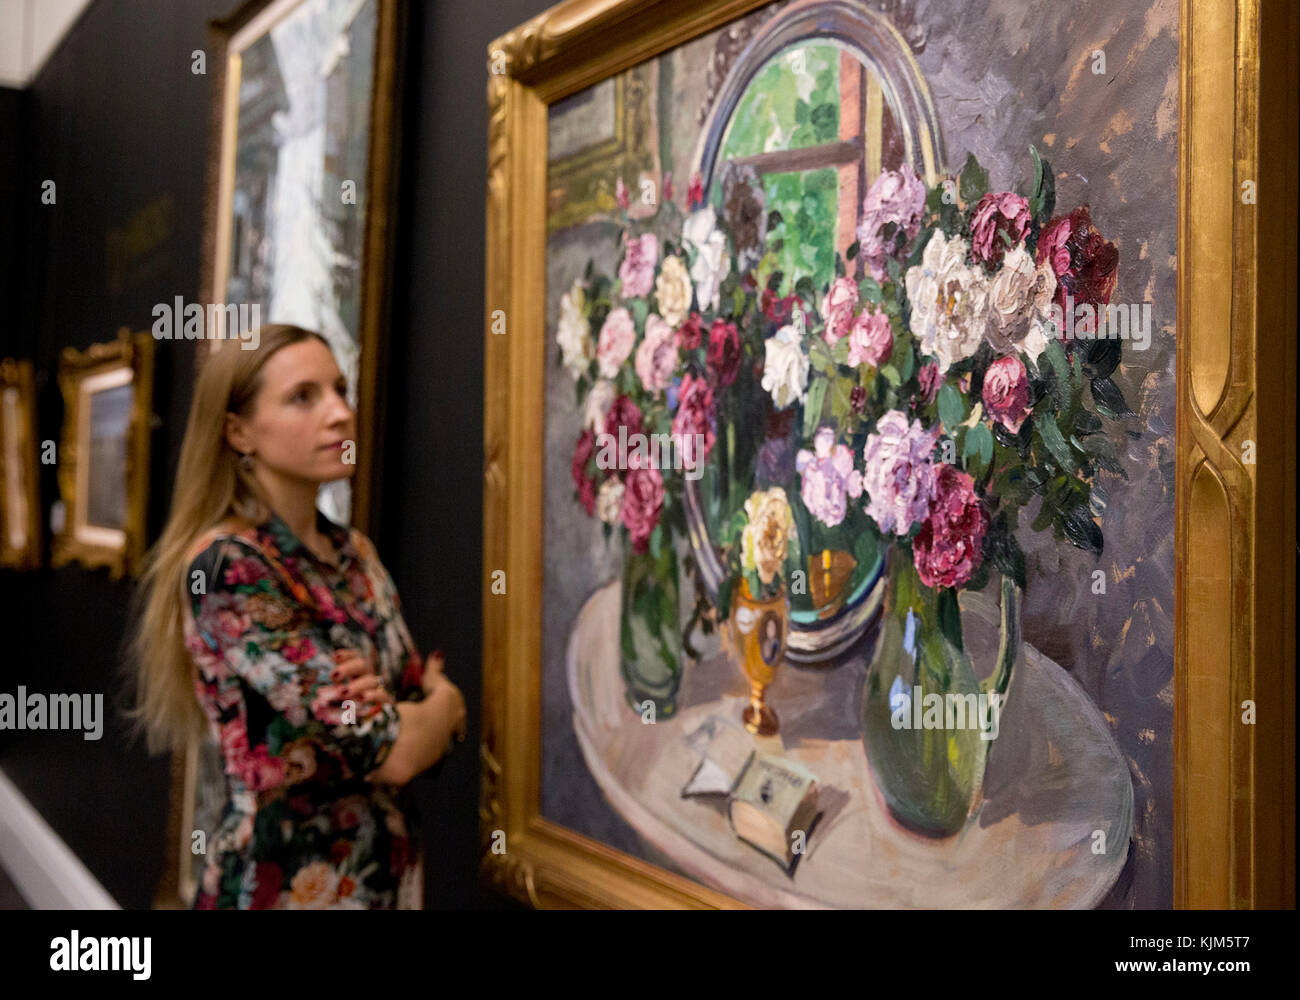 Un membre du personnel regarde 'la vie de Still avec des fleurs' par Alexander Mikhaïlovich, 1935, (est. £250,000-350,000) qui fait partie de Sotheby's Inaugural sale of Art de l'URSS à Londres pour coïncider avec le 100e anniversaire de la Révolution russe de 1917. Banque D'Images